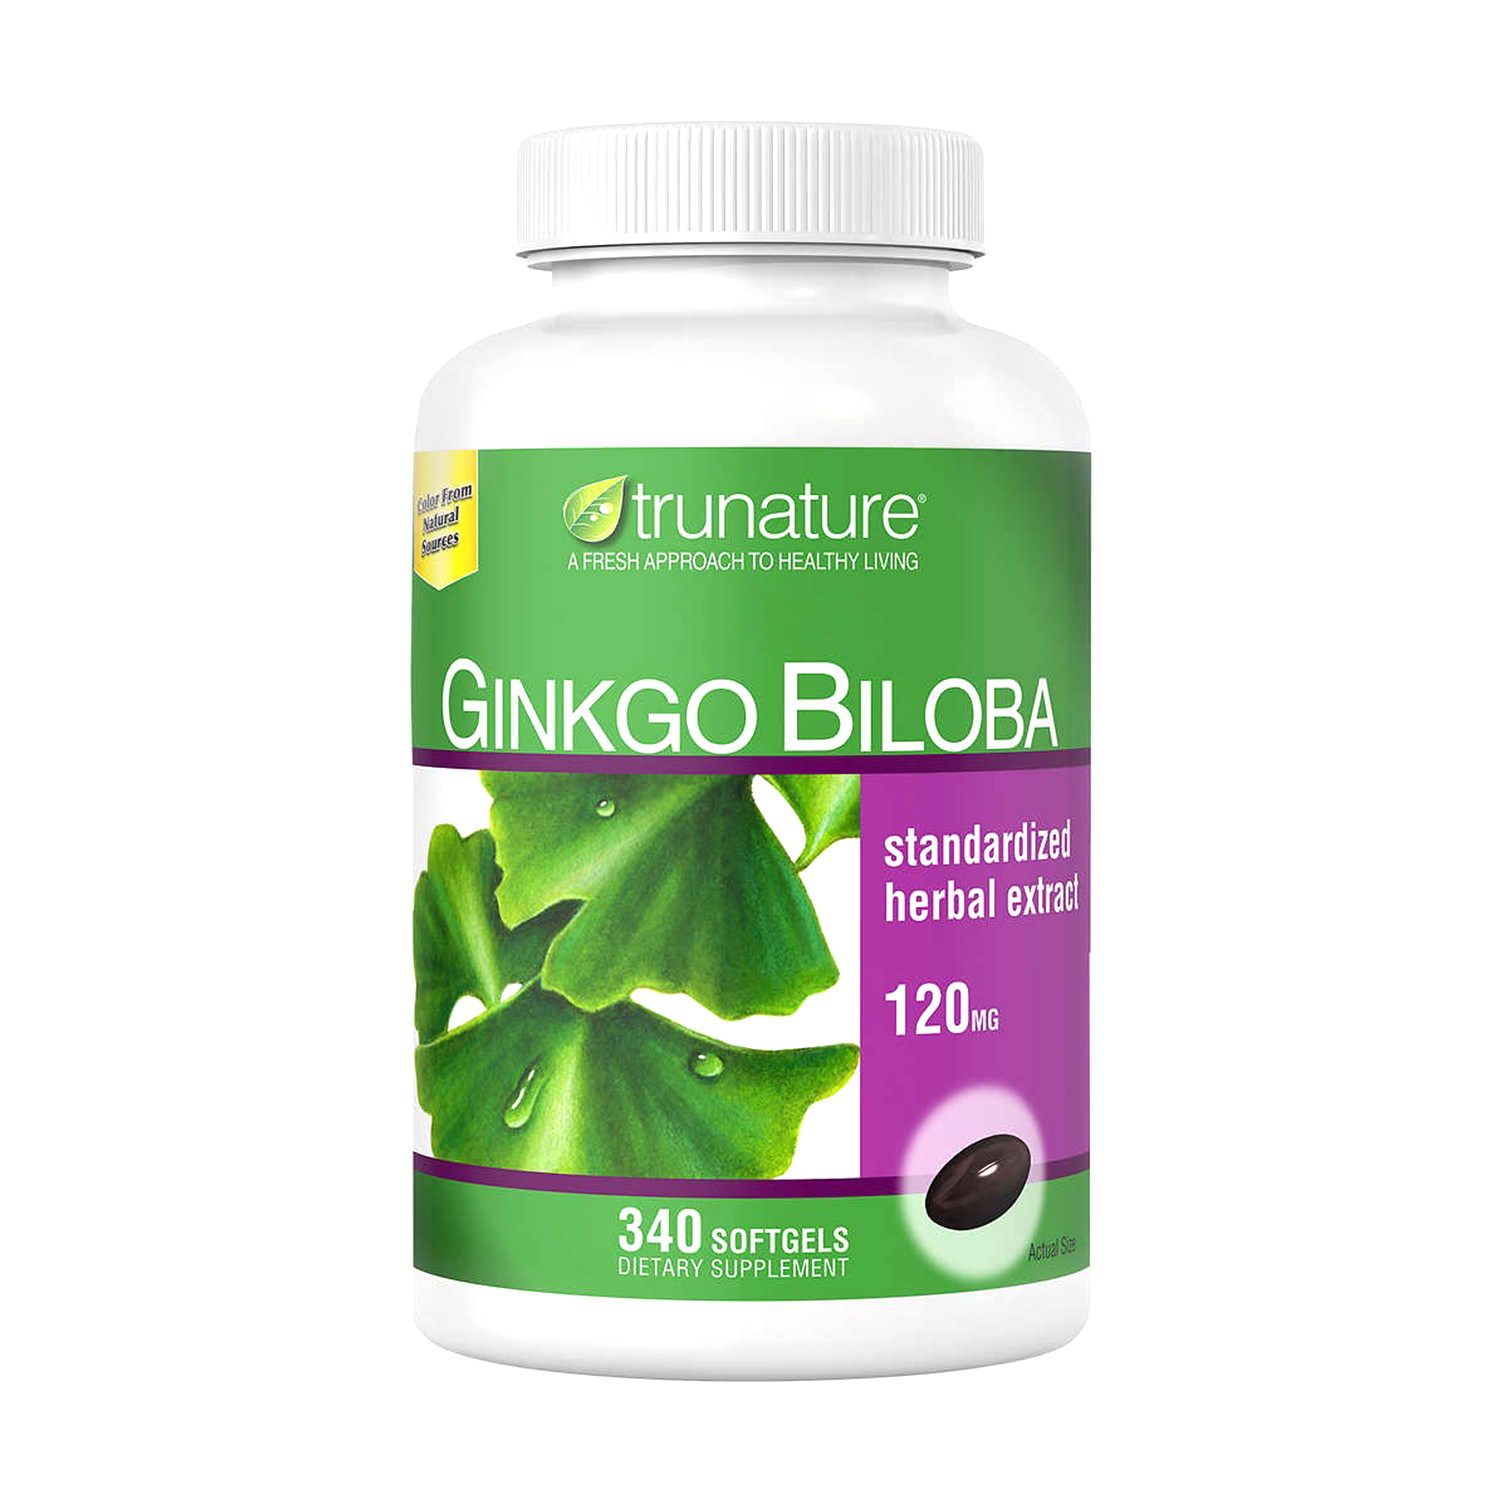 Viên uống Ginkgo Biloba giúp tăng cường tuần hoàn não- Hộp 340 viên của Mỹ thumbnail